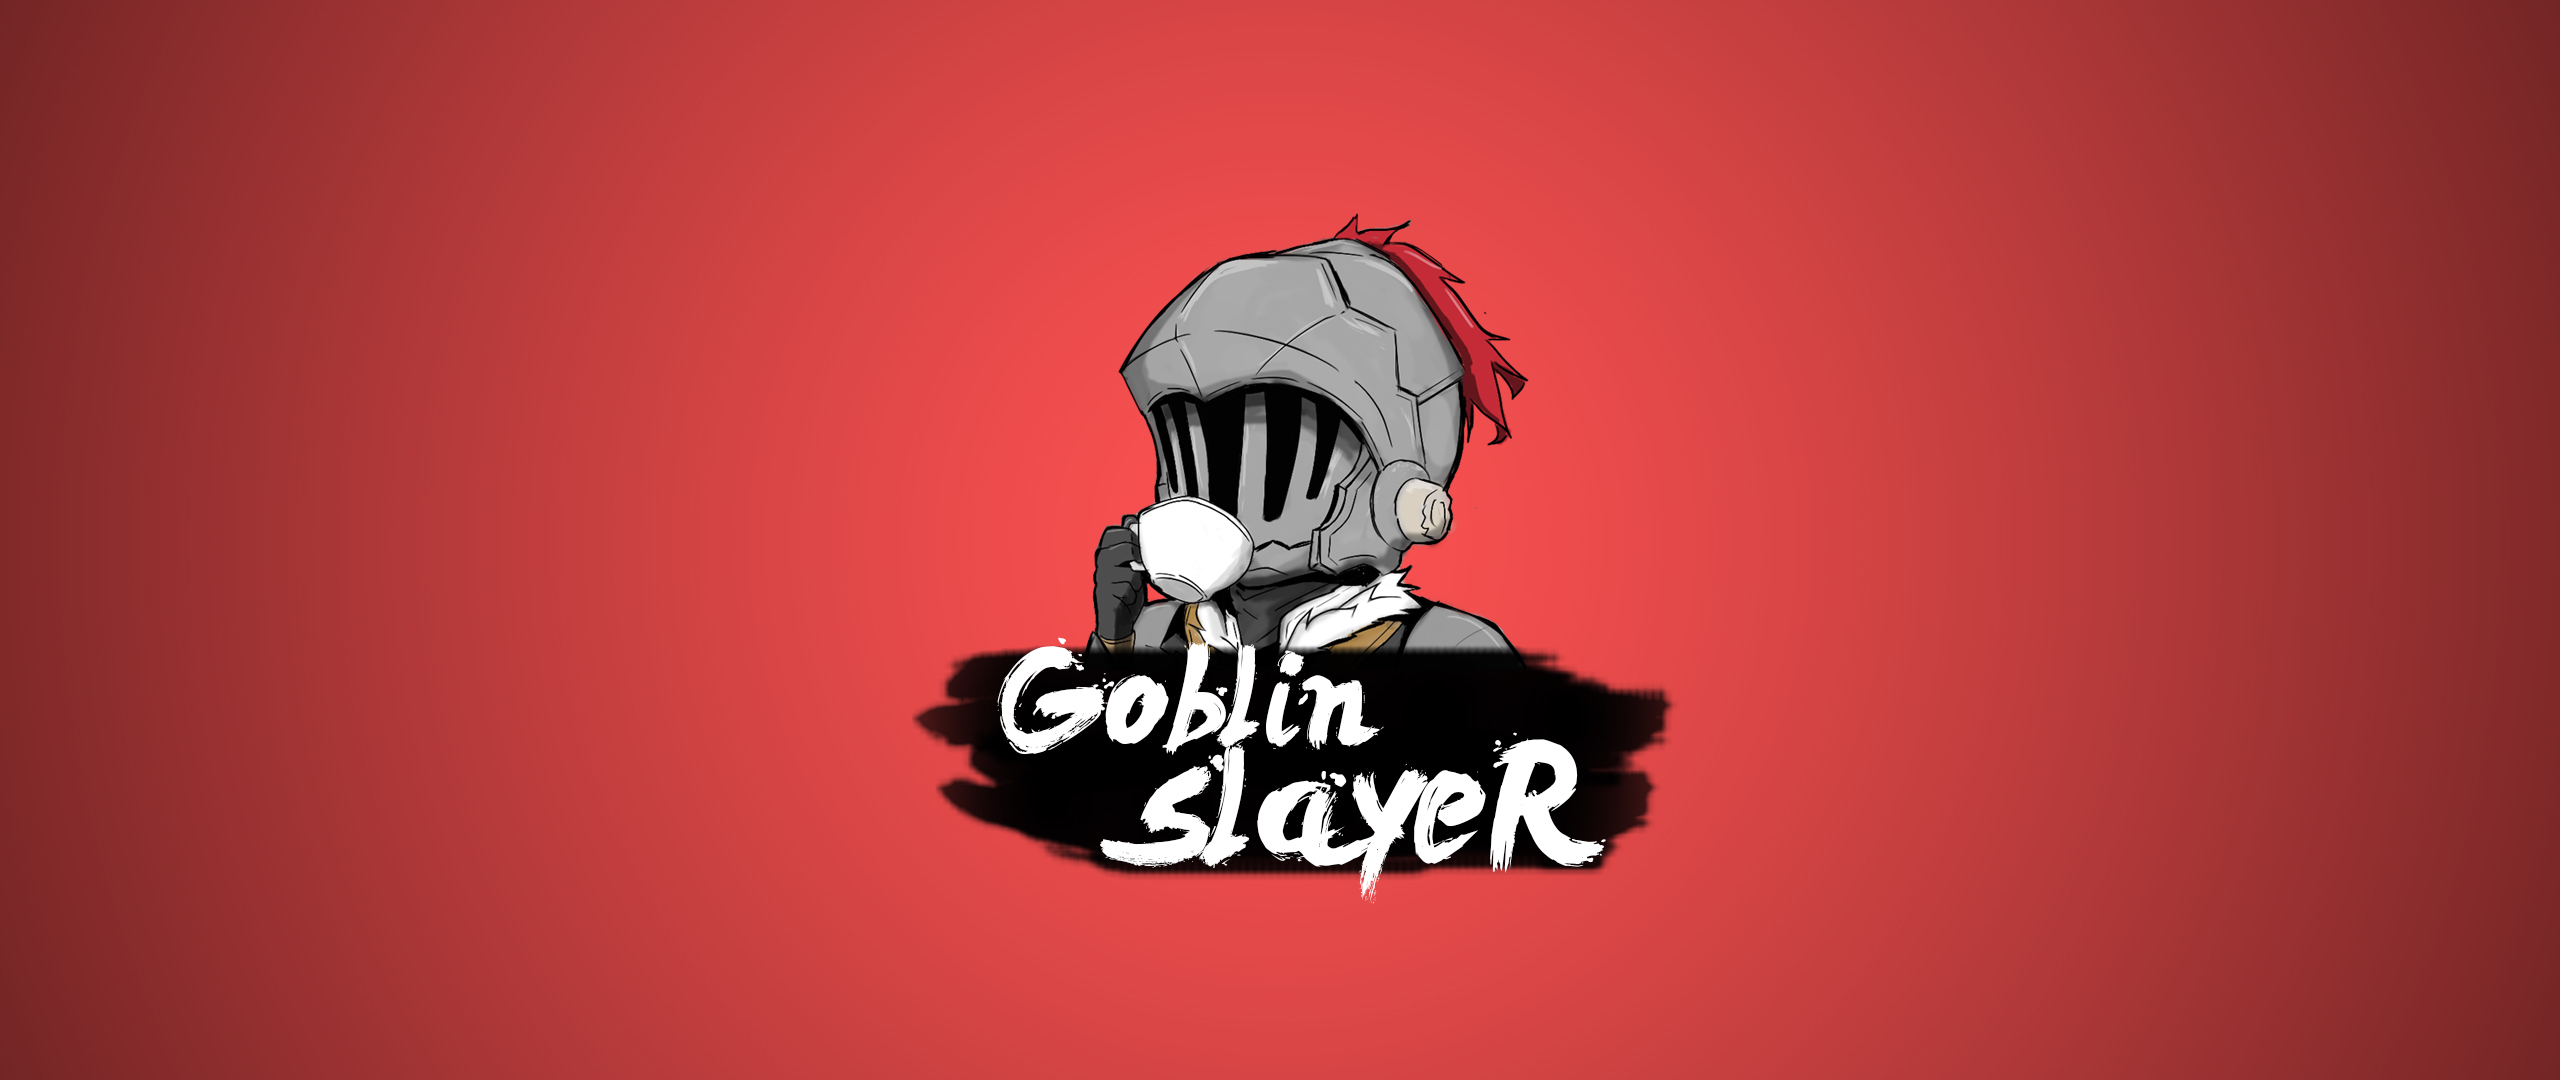 Goblin Slayer 2560x1080